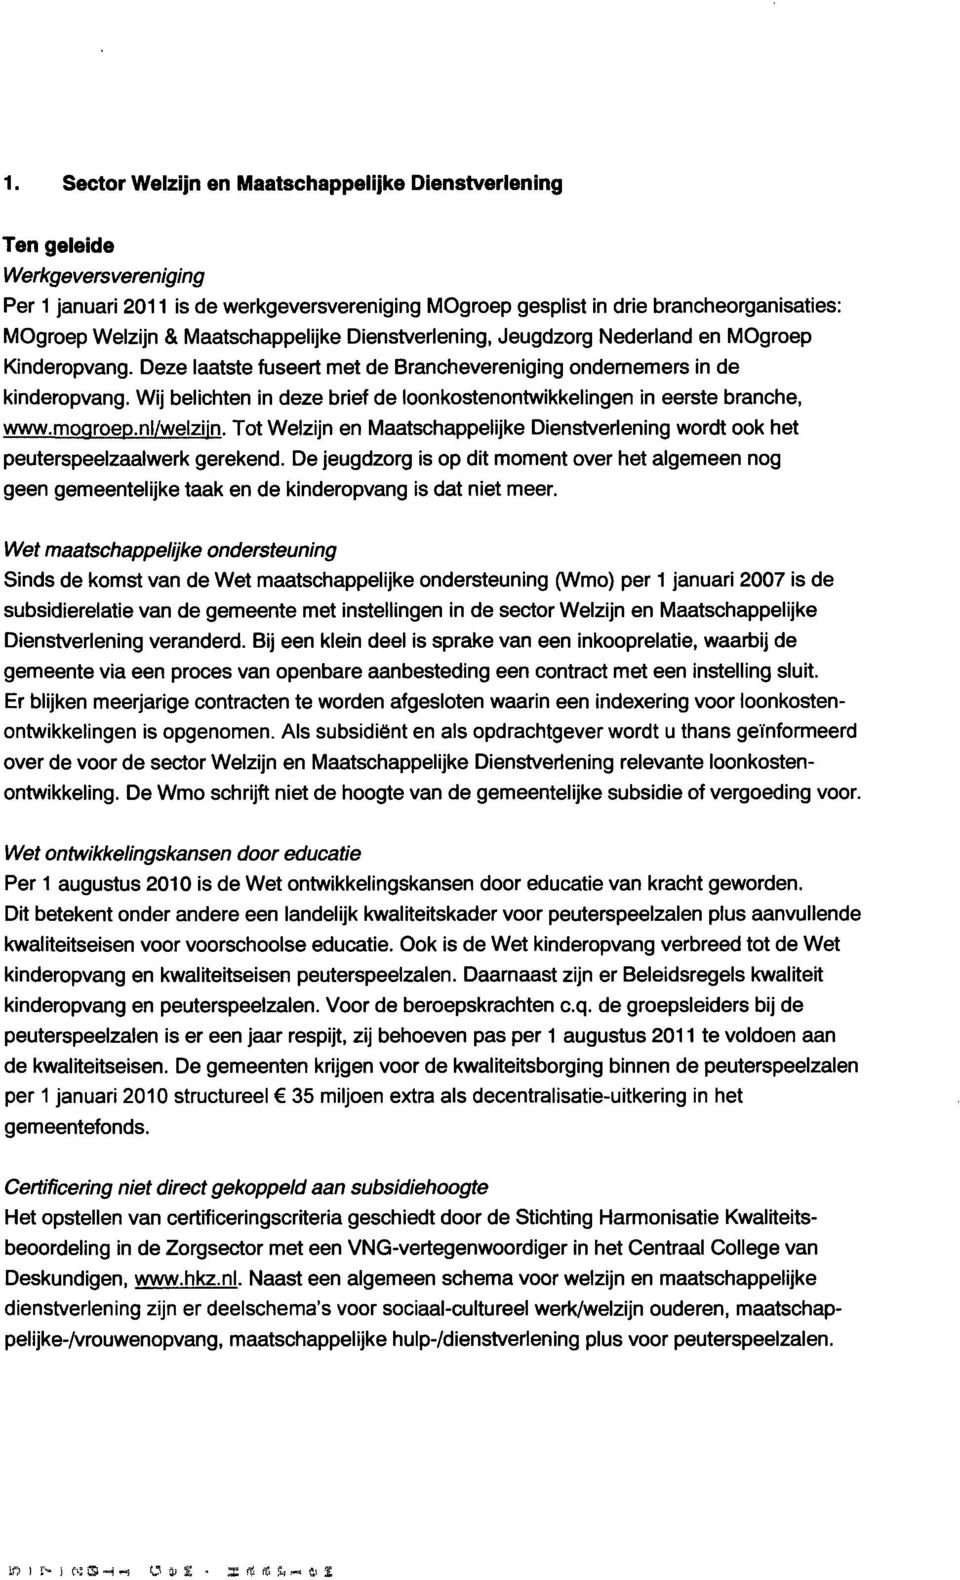 Wij belichten in deze brief de loonkostenontwikkelingen in eerste branche, www.moqroep.nl/welzijn. Tot Welzijn en Maatschappelijke Dienstverlening wordt ook het peuterspeelzaalwerk gerekend.